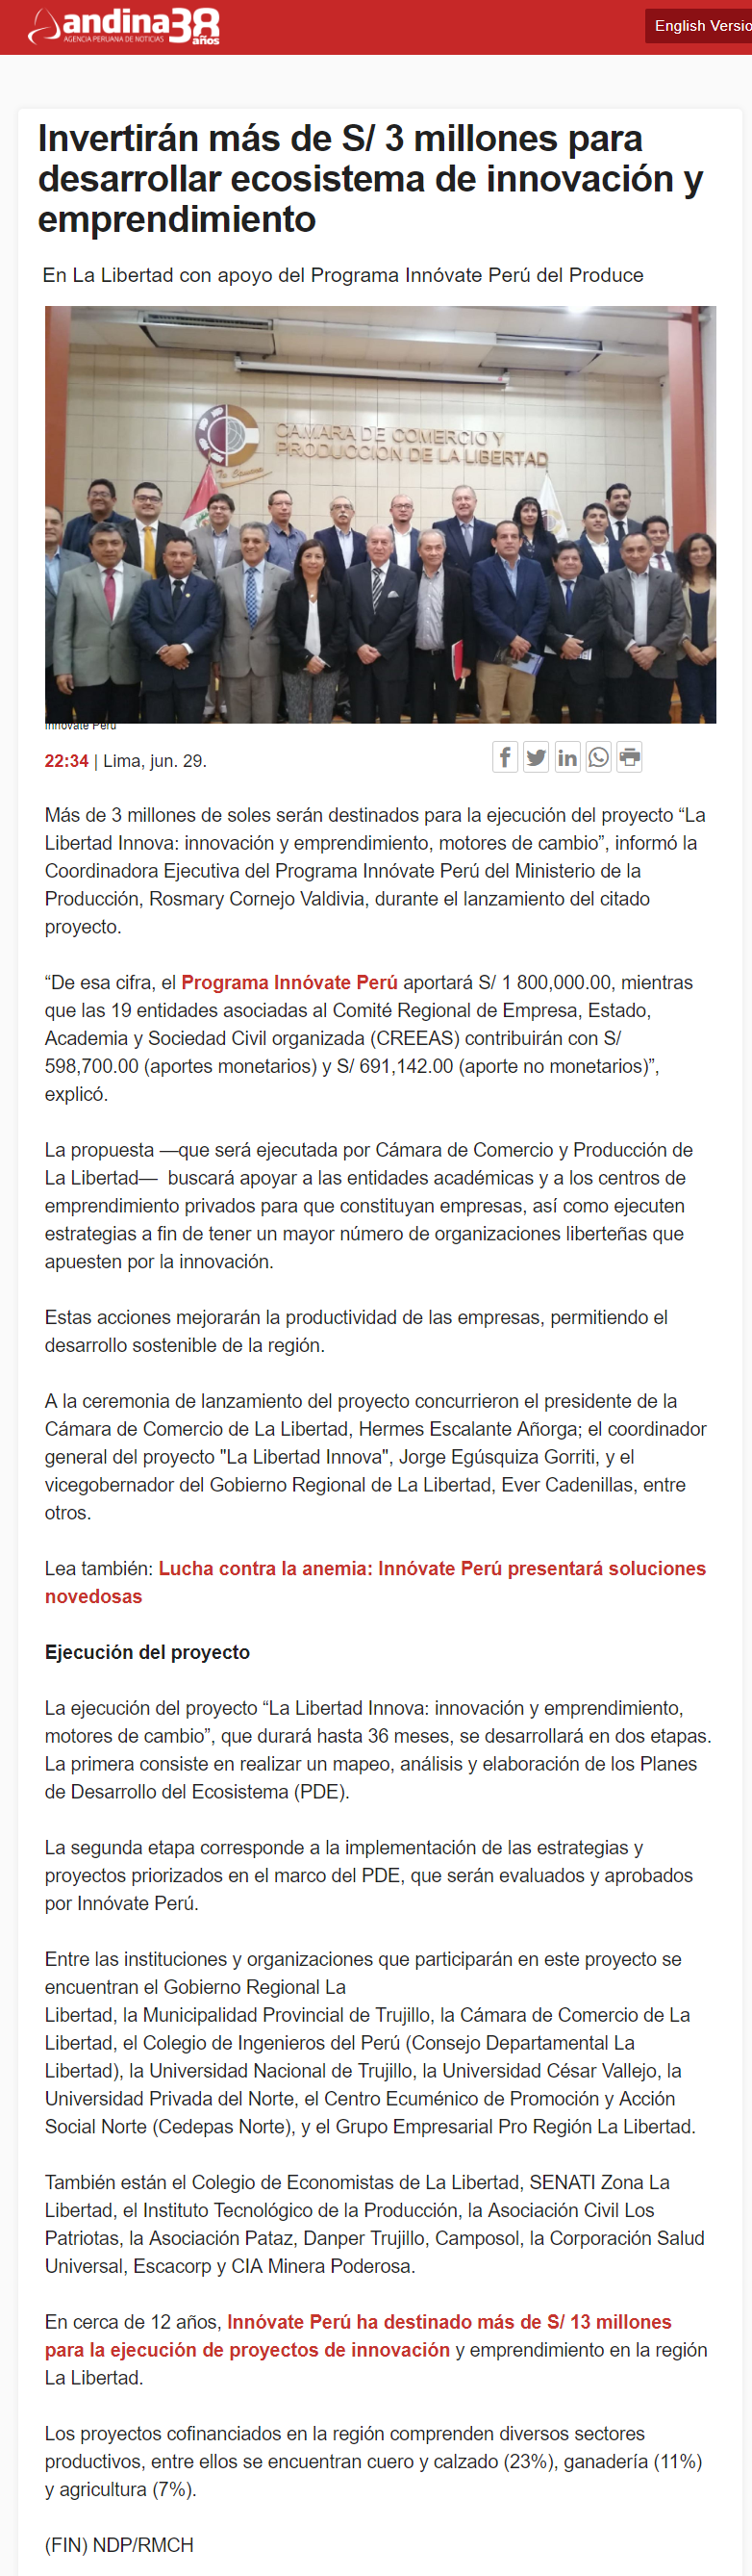 01.07.19.04 Agencia Andina Cámara De Comercio De La Libertad Y CREEAS Lanzan Primera Etapa Del Proyecto La Libertad Innova